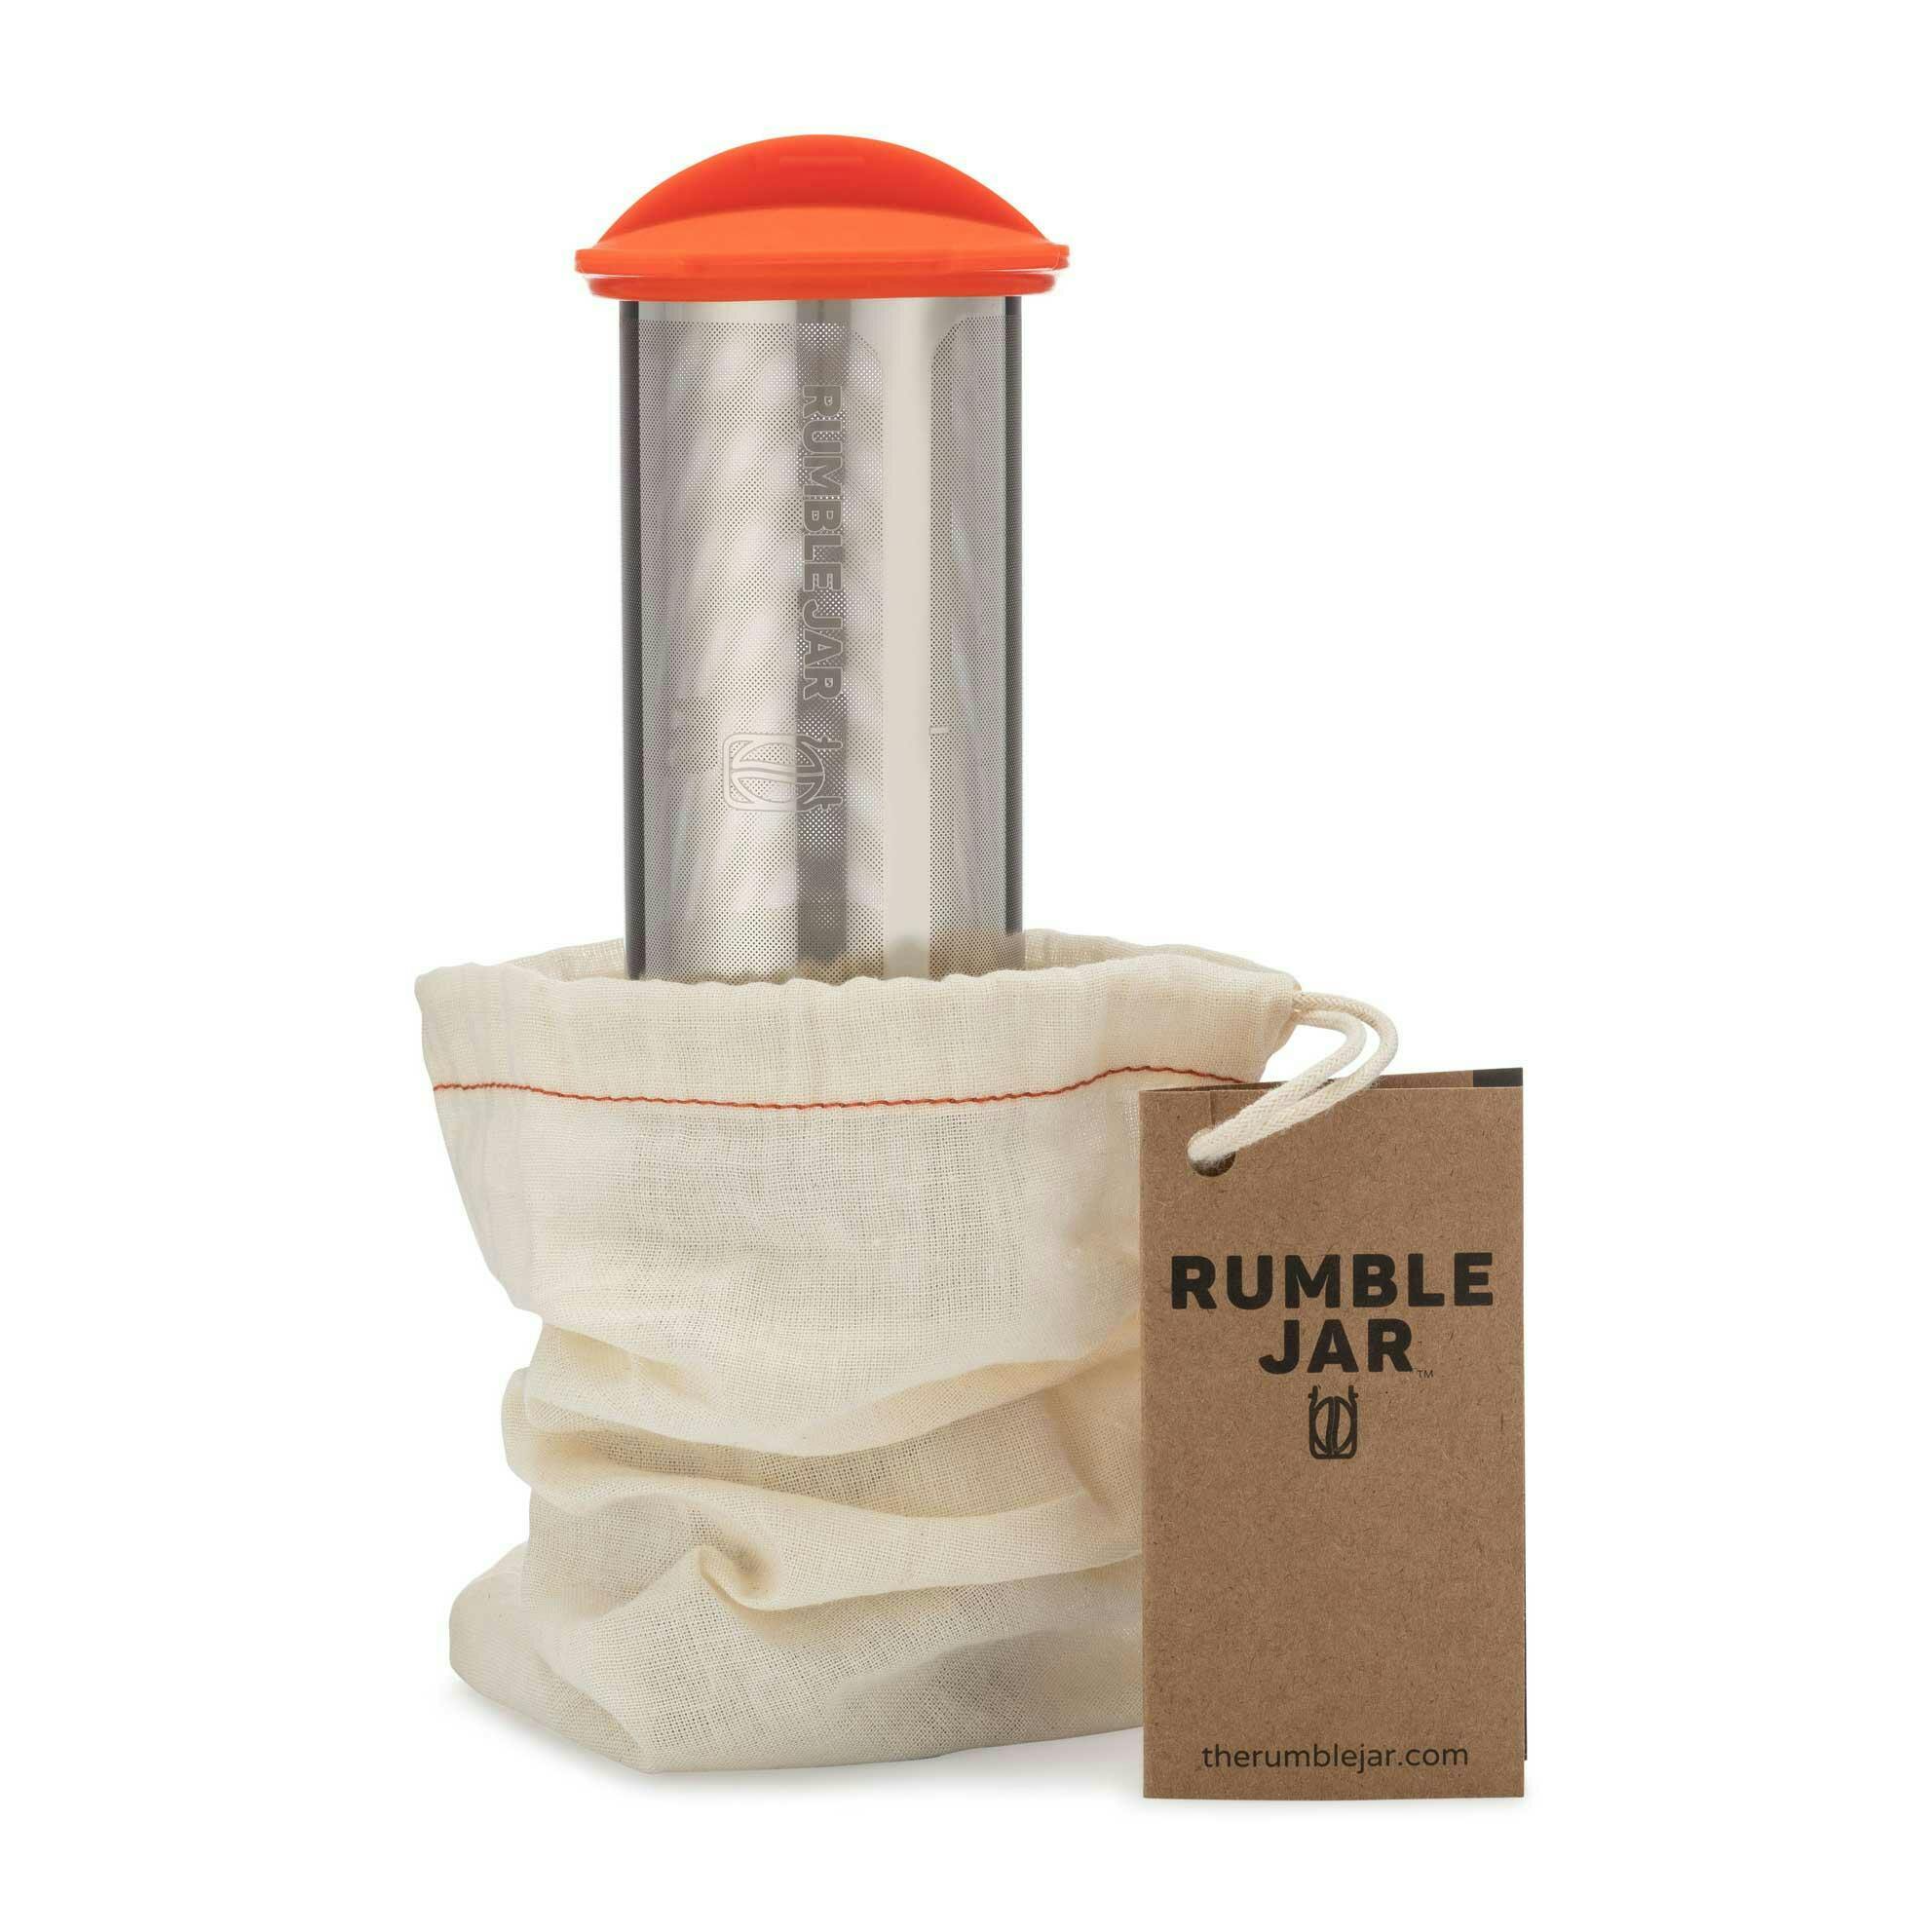 Rumble Jar  Reviews on